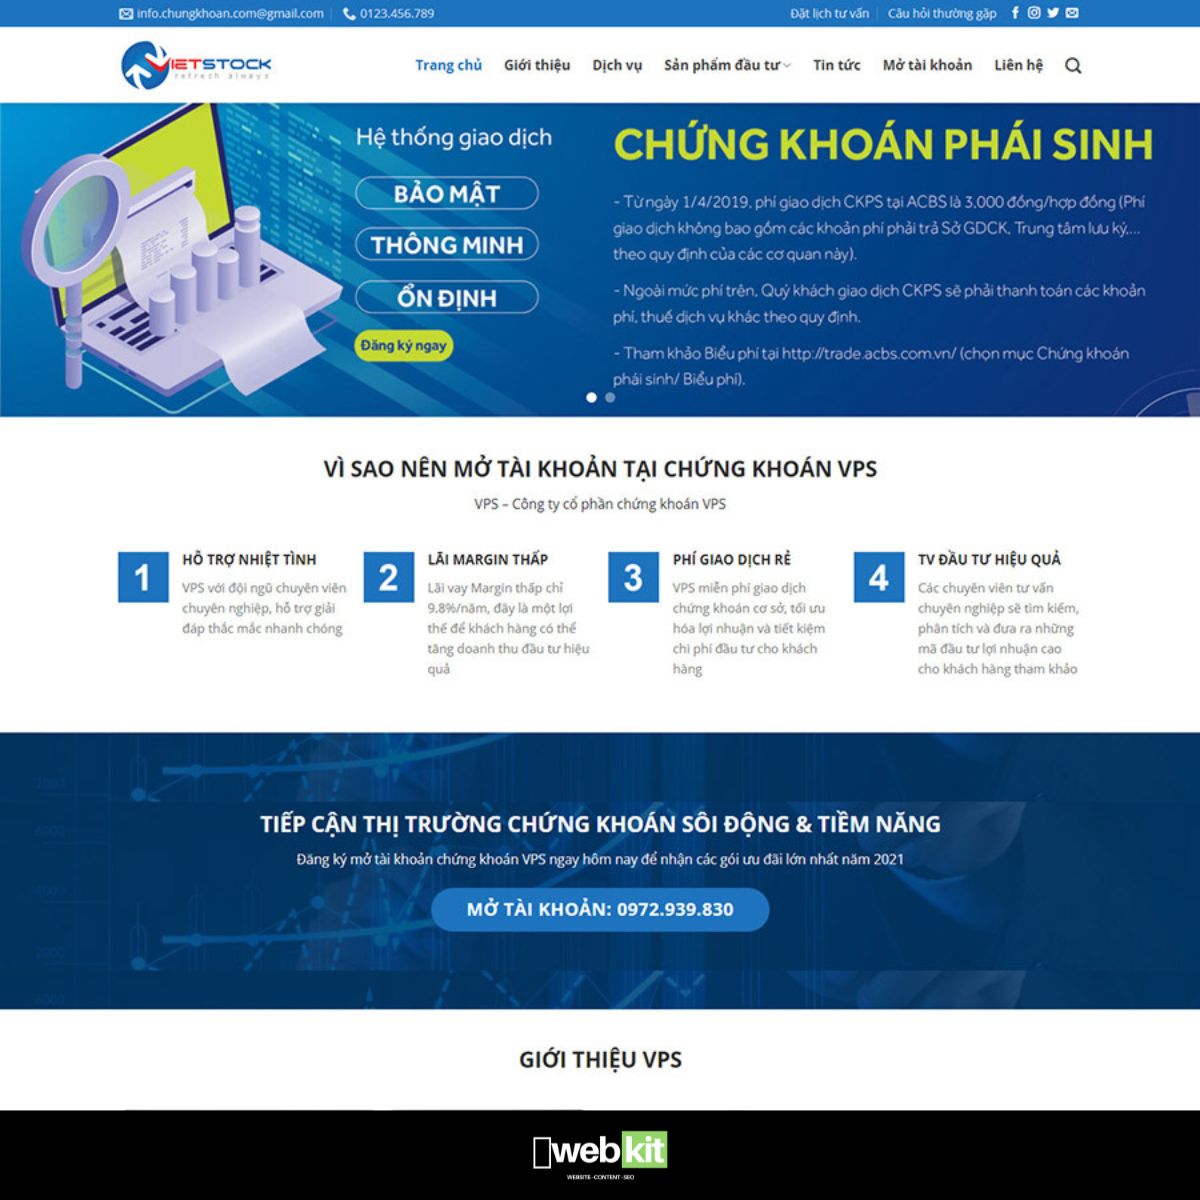 Thiết kế website giới thiệu công ty chứng khoán - WebKit 14246